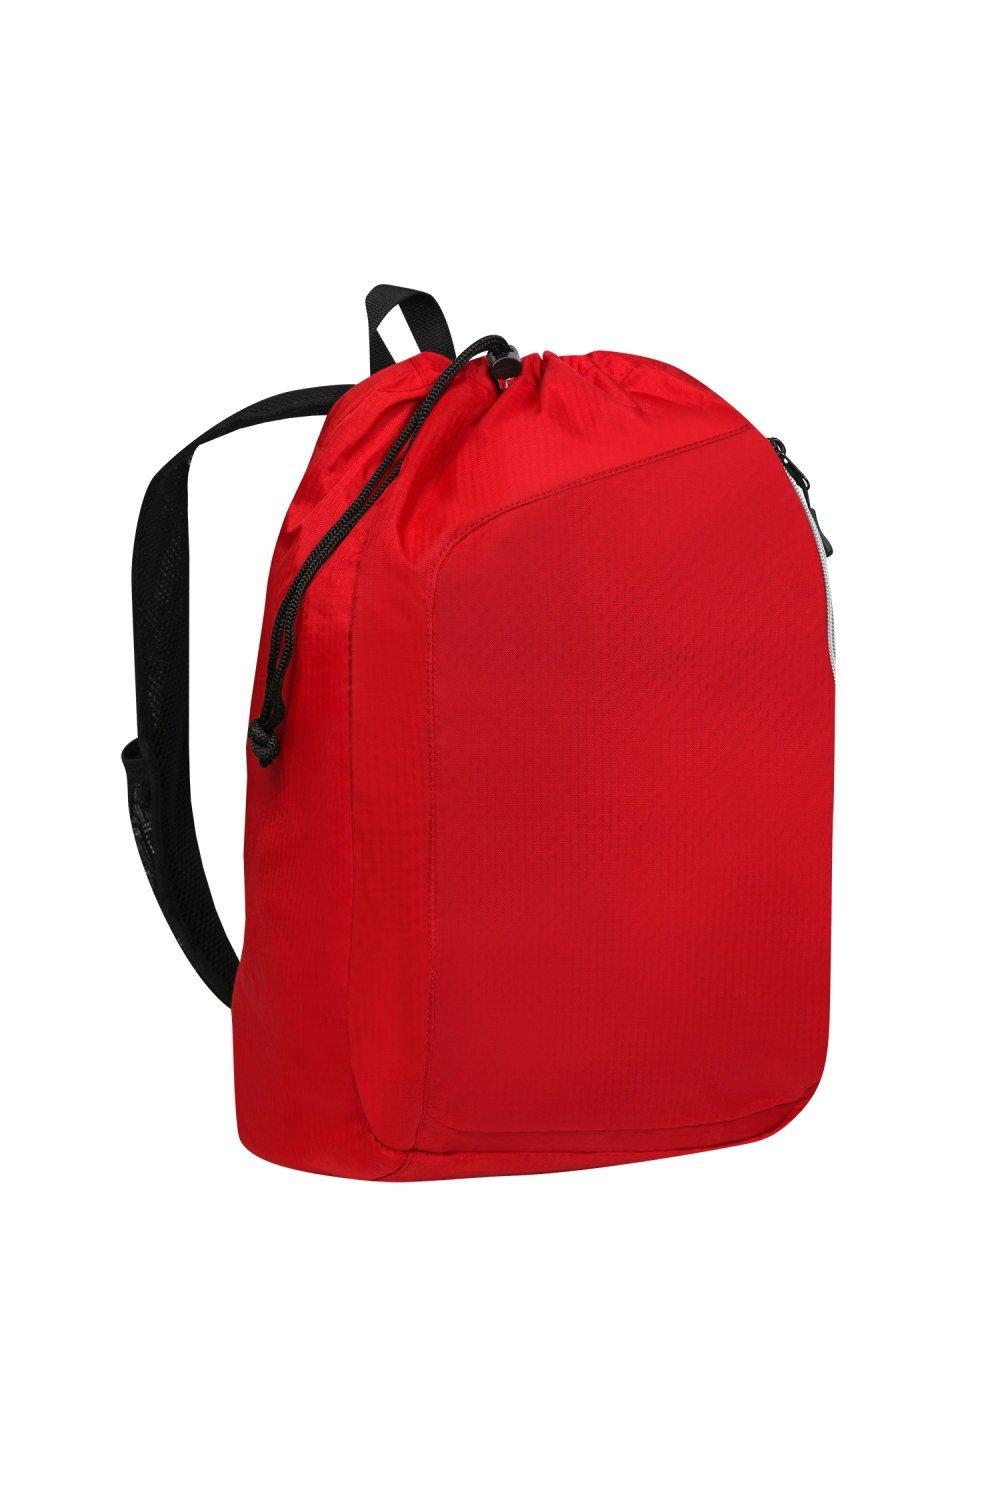 Рюкзак Endurance Sonic с одним ремнем Ogio, красный сумка endurance pulse на шнурке ogio синий